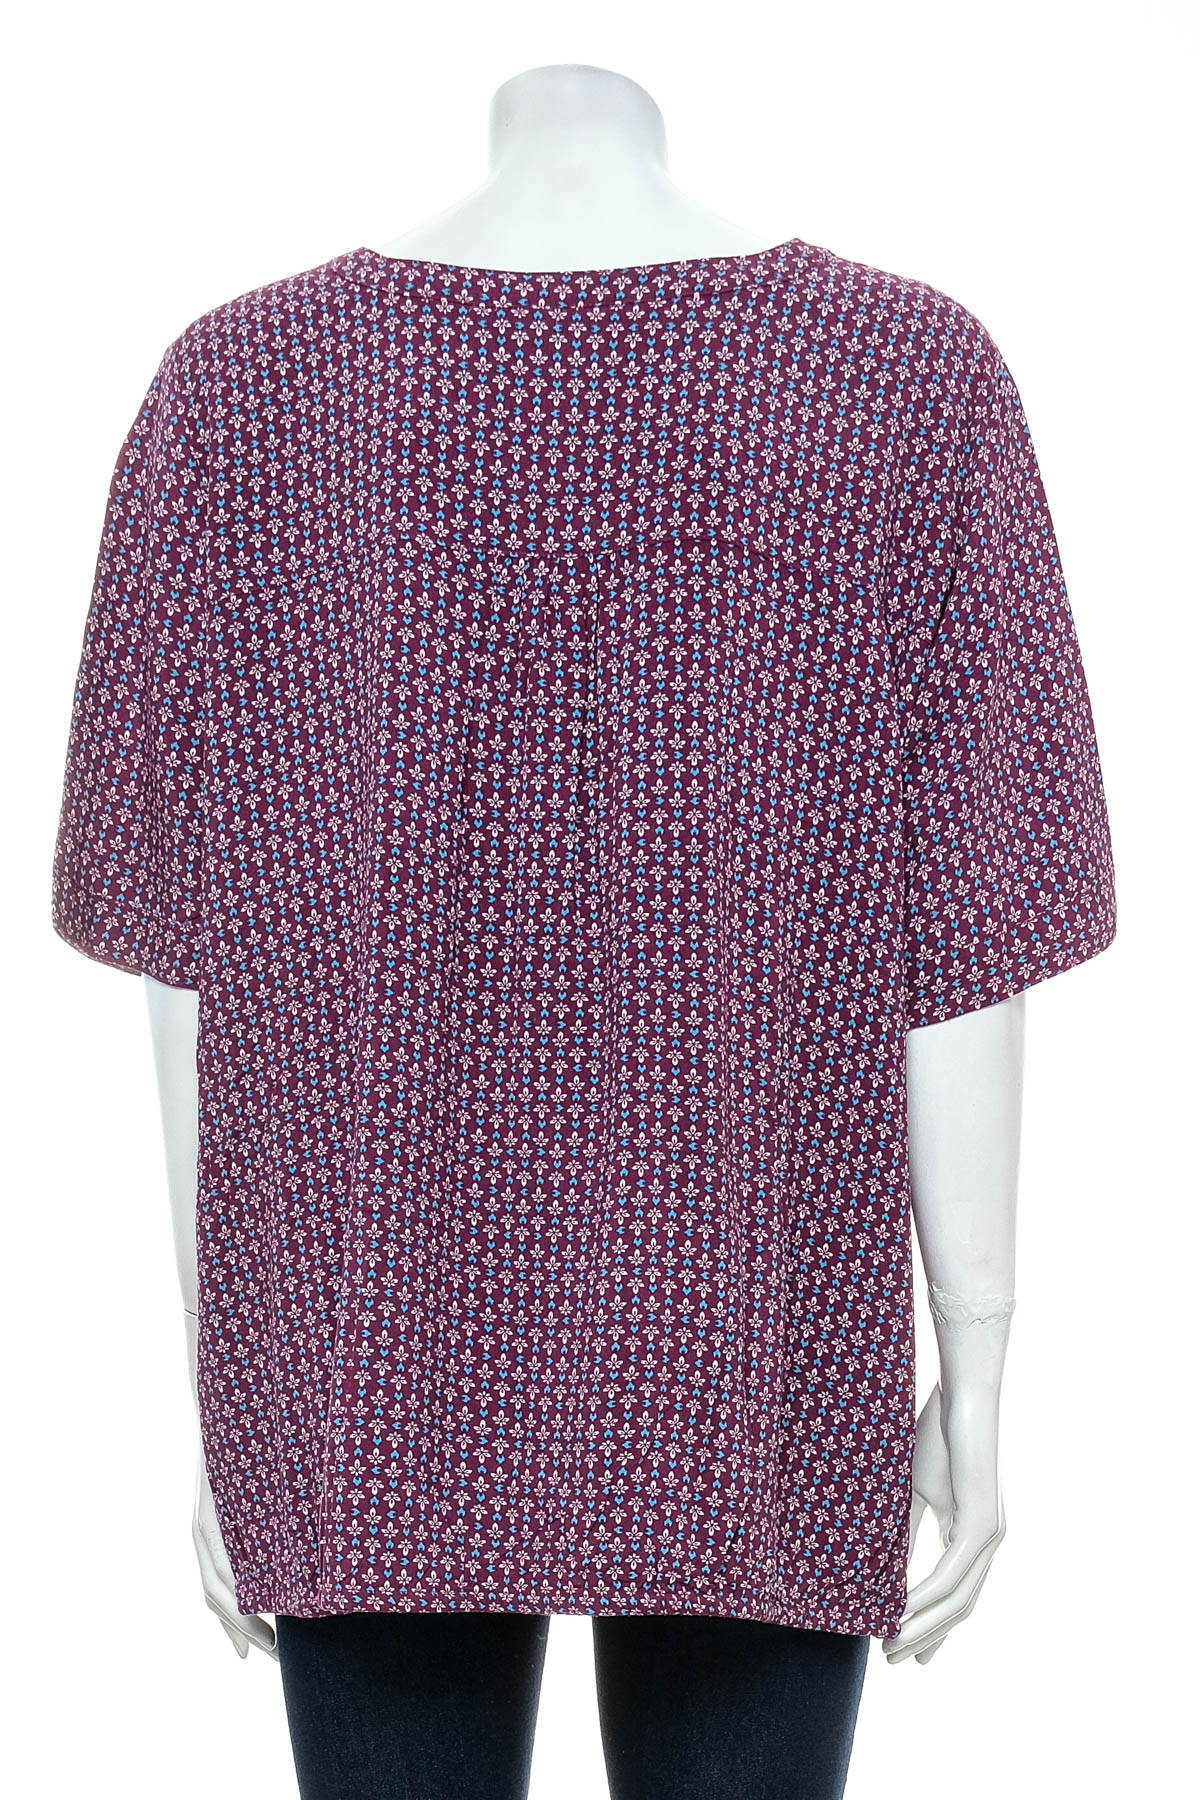 Γυναικείо πουκάμισο - Bpc Bonprix Collection - 1